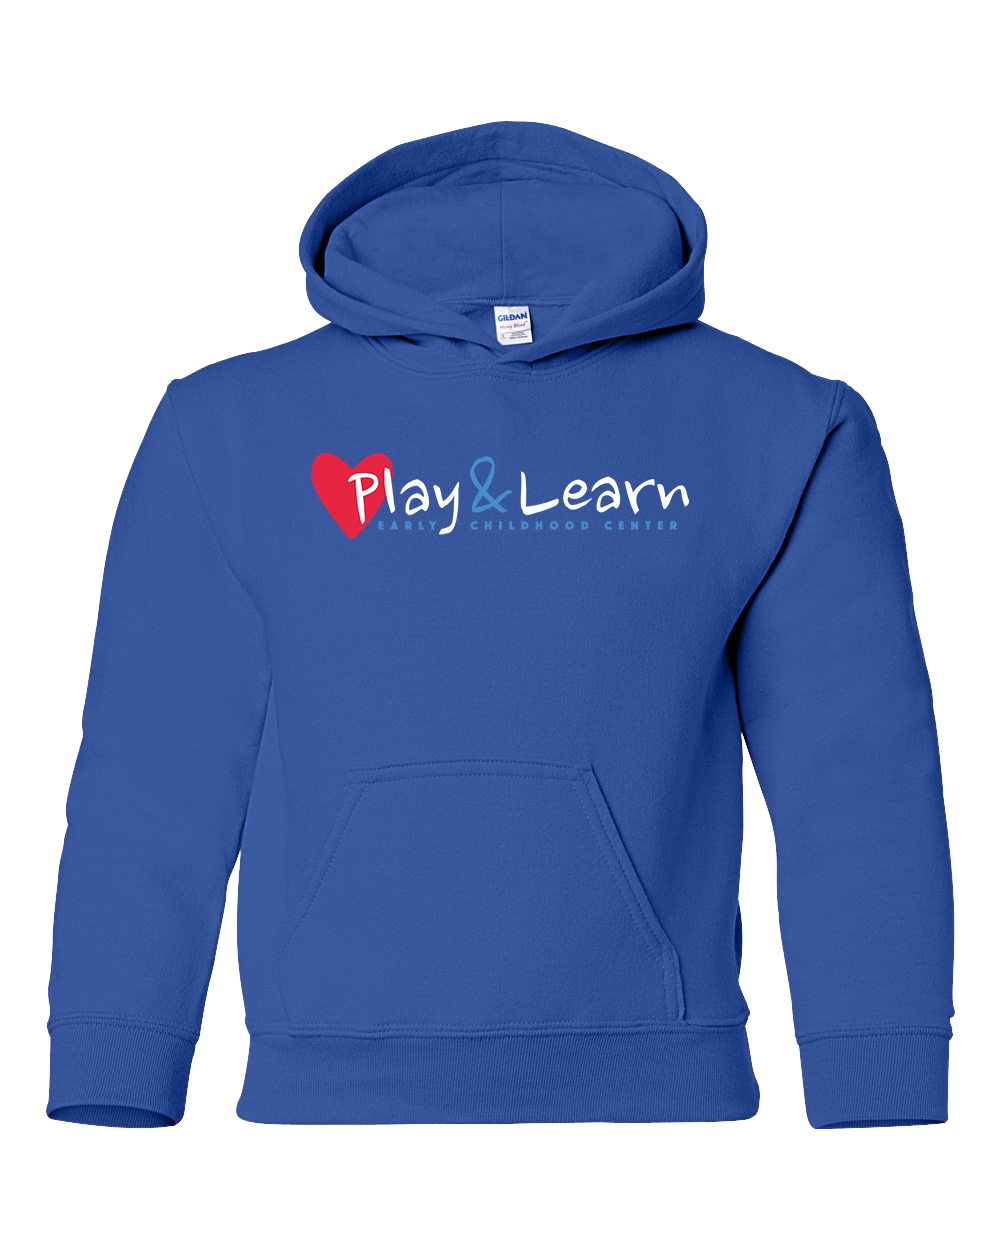 Play & Learn - Heavy Blend Hooded Sweatshirt